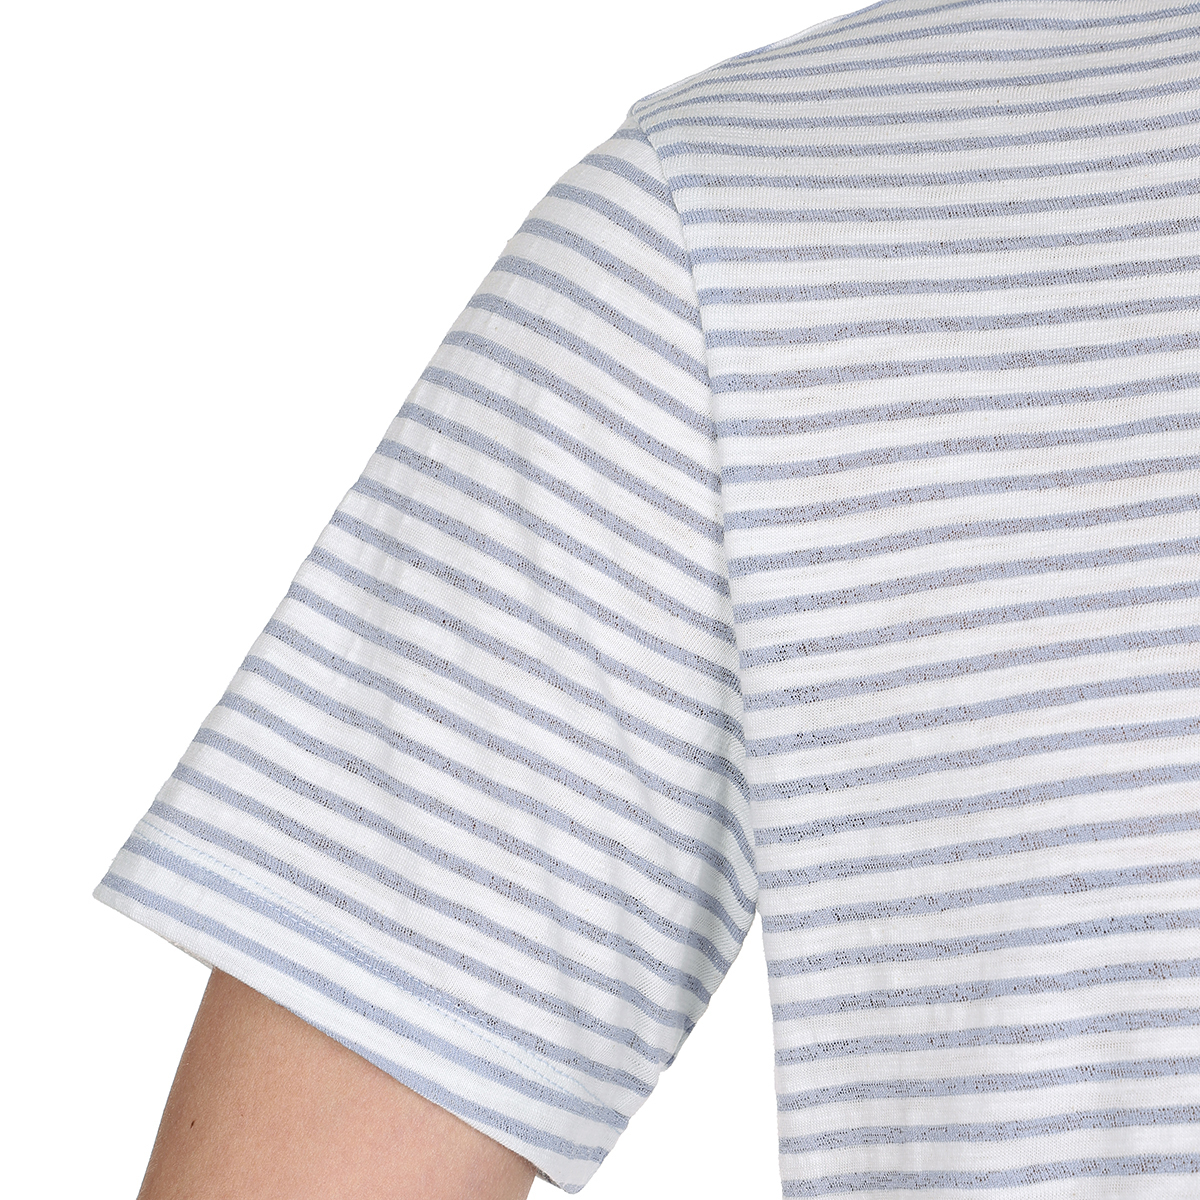 게스 남성 반소매 슬럽 티셔츠 - 라이트블루